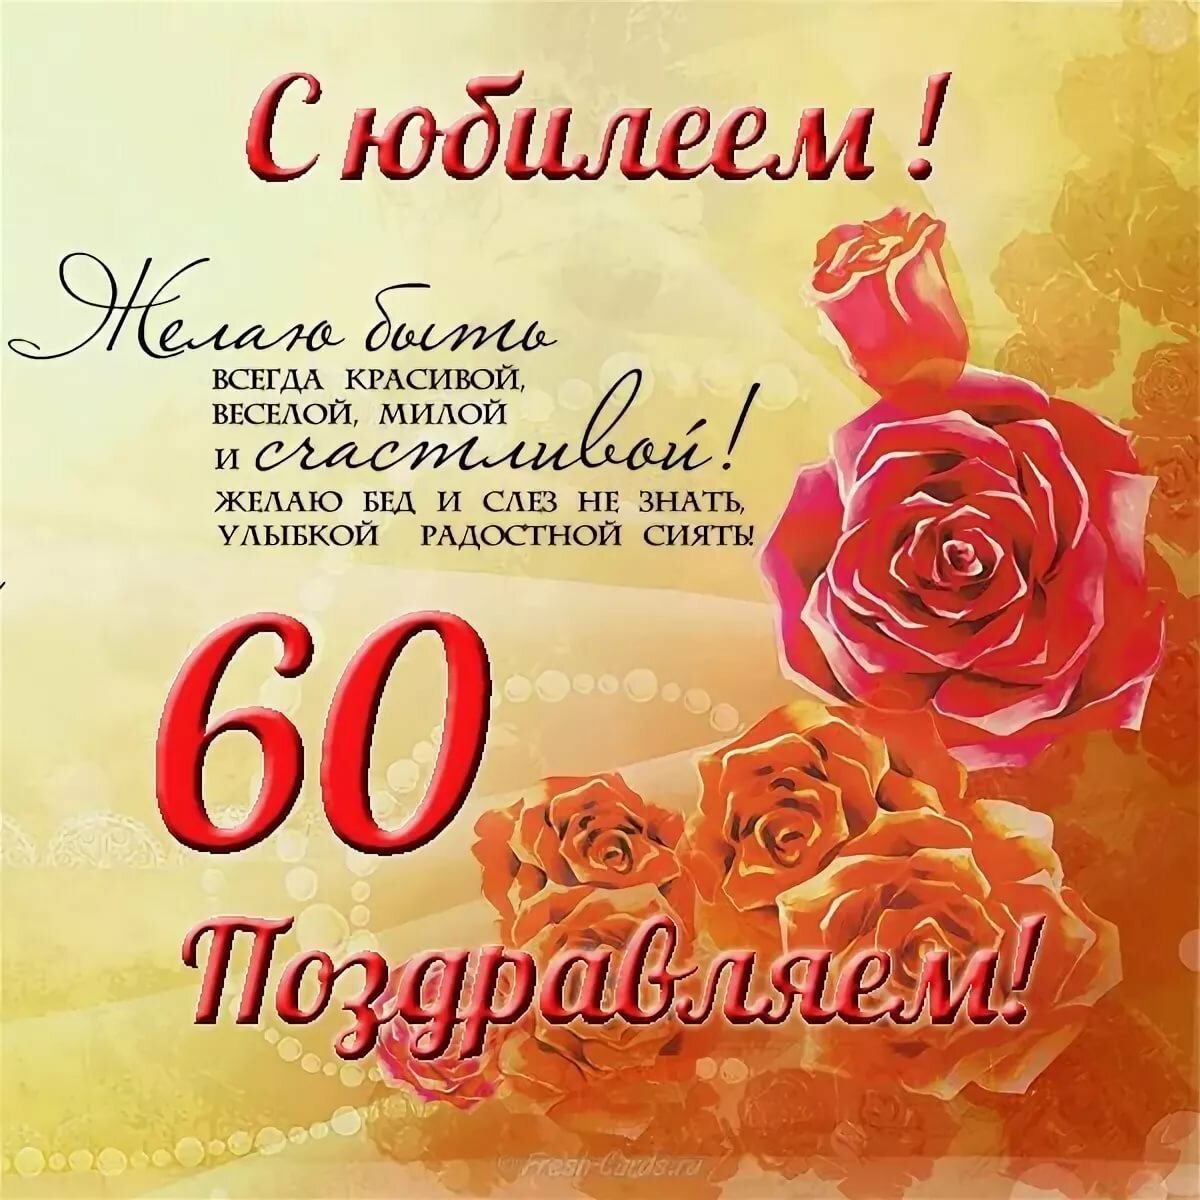 Поздравления с днем рождения женщине 60 лет